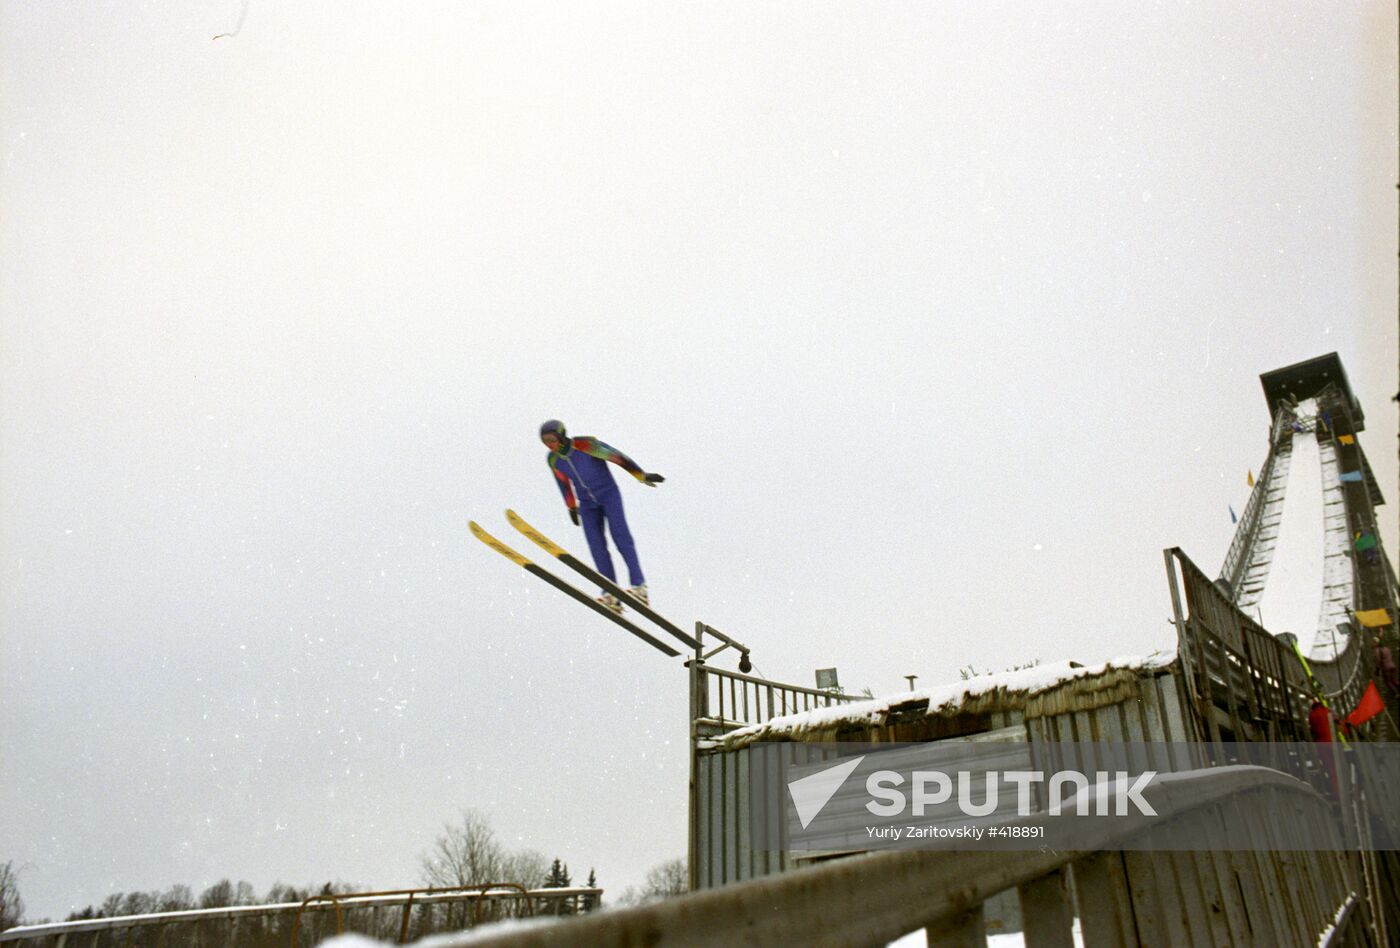 Ski-jump